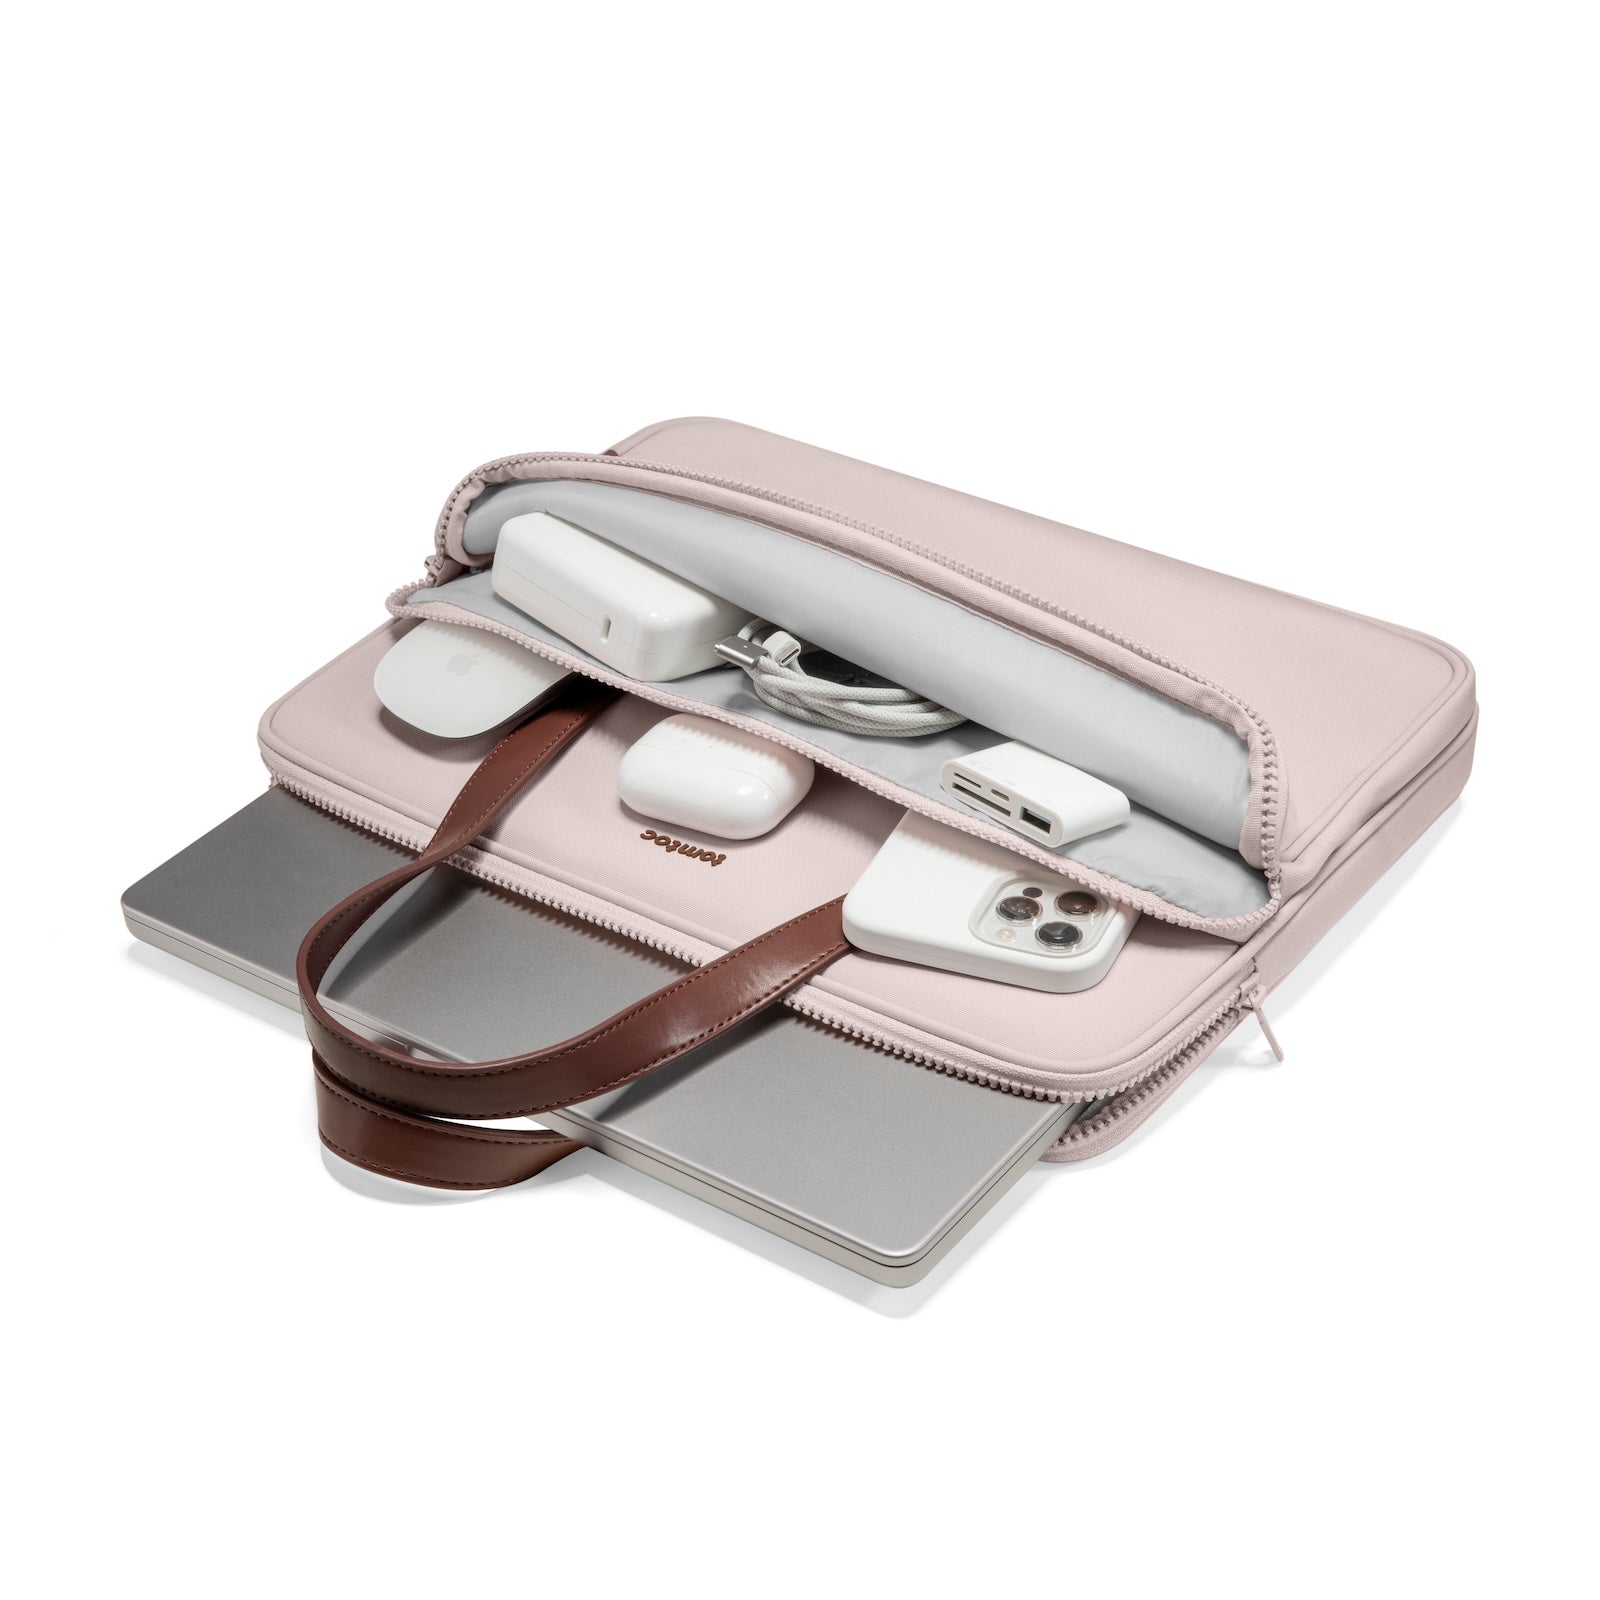 tomtoc Versatile-A11 Laptop Handbag